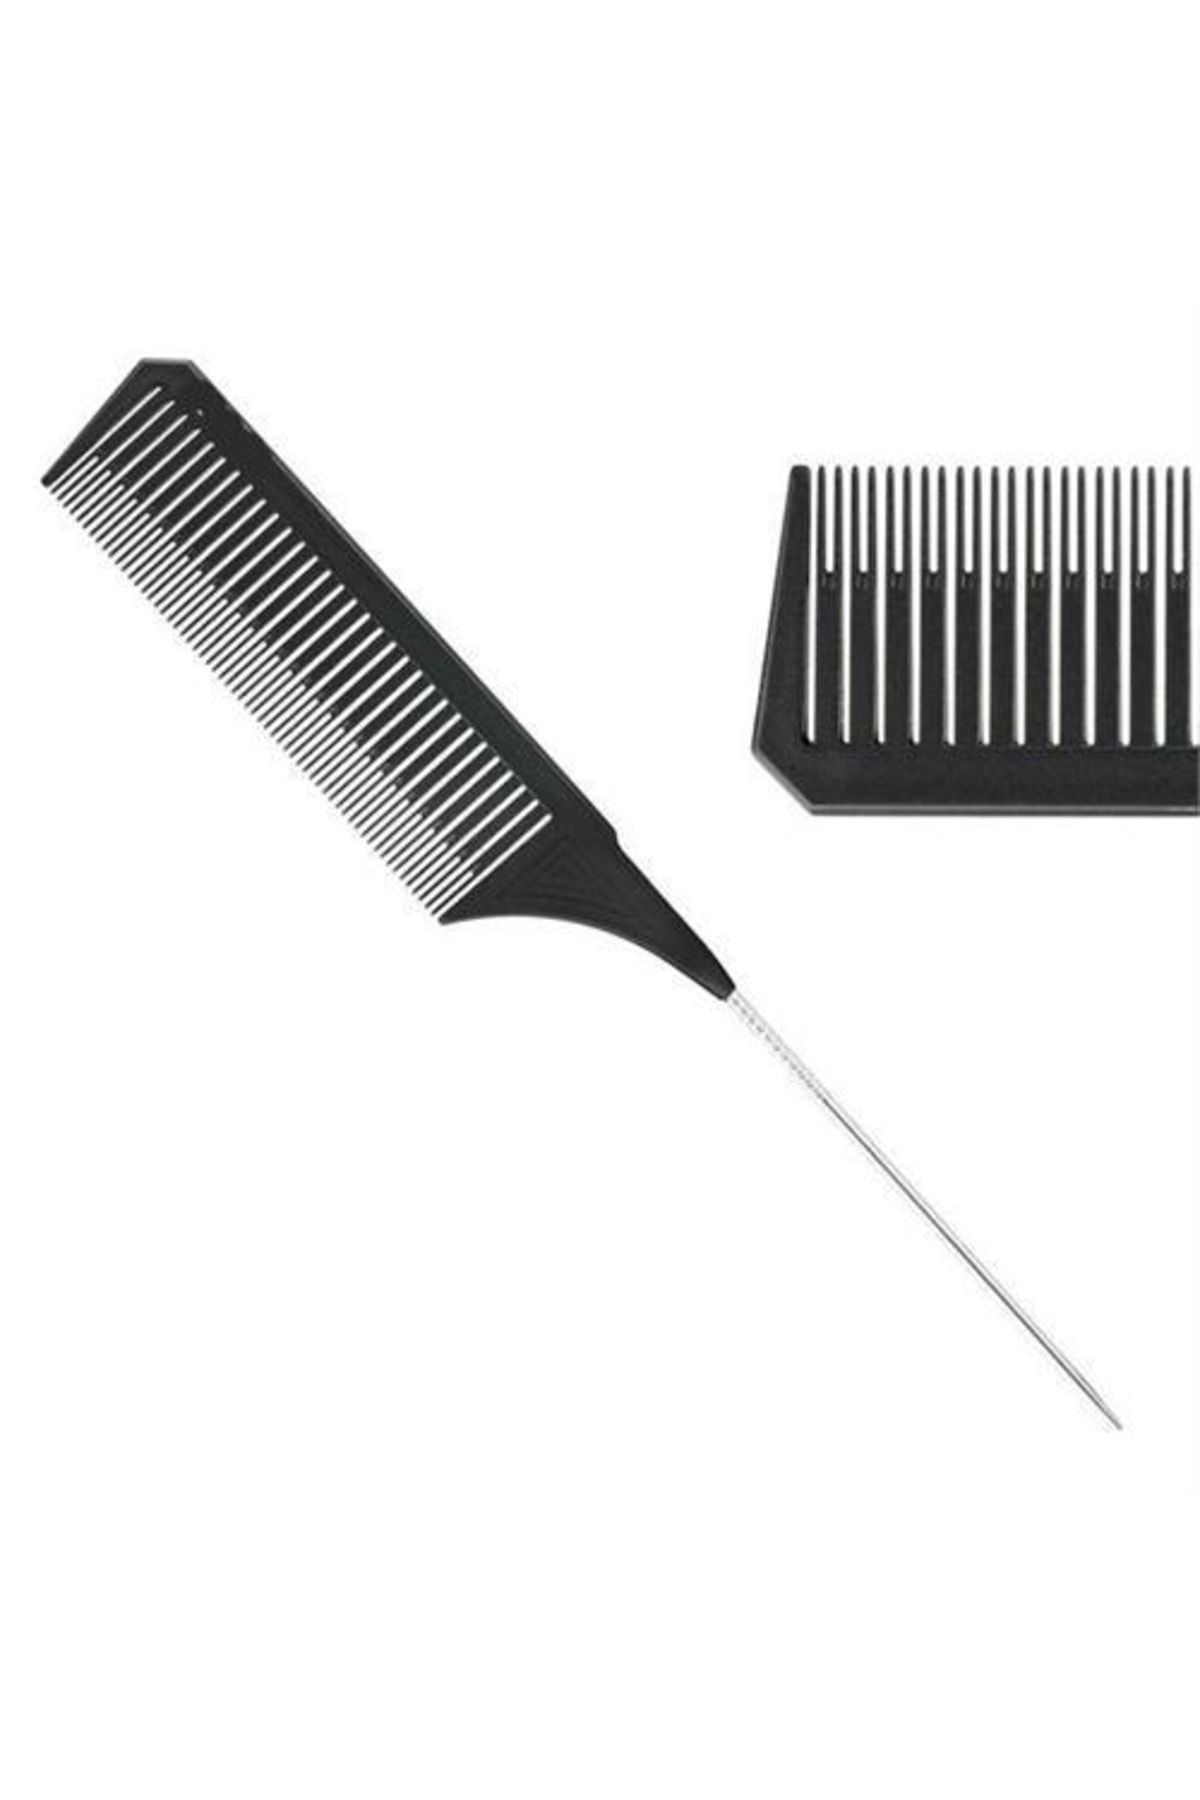 Vellen combs